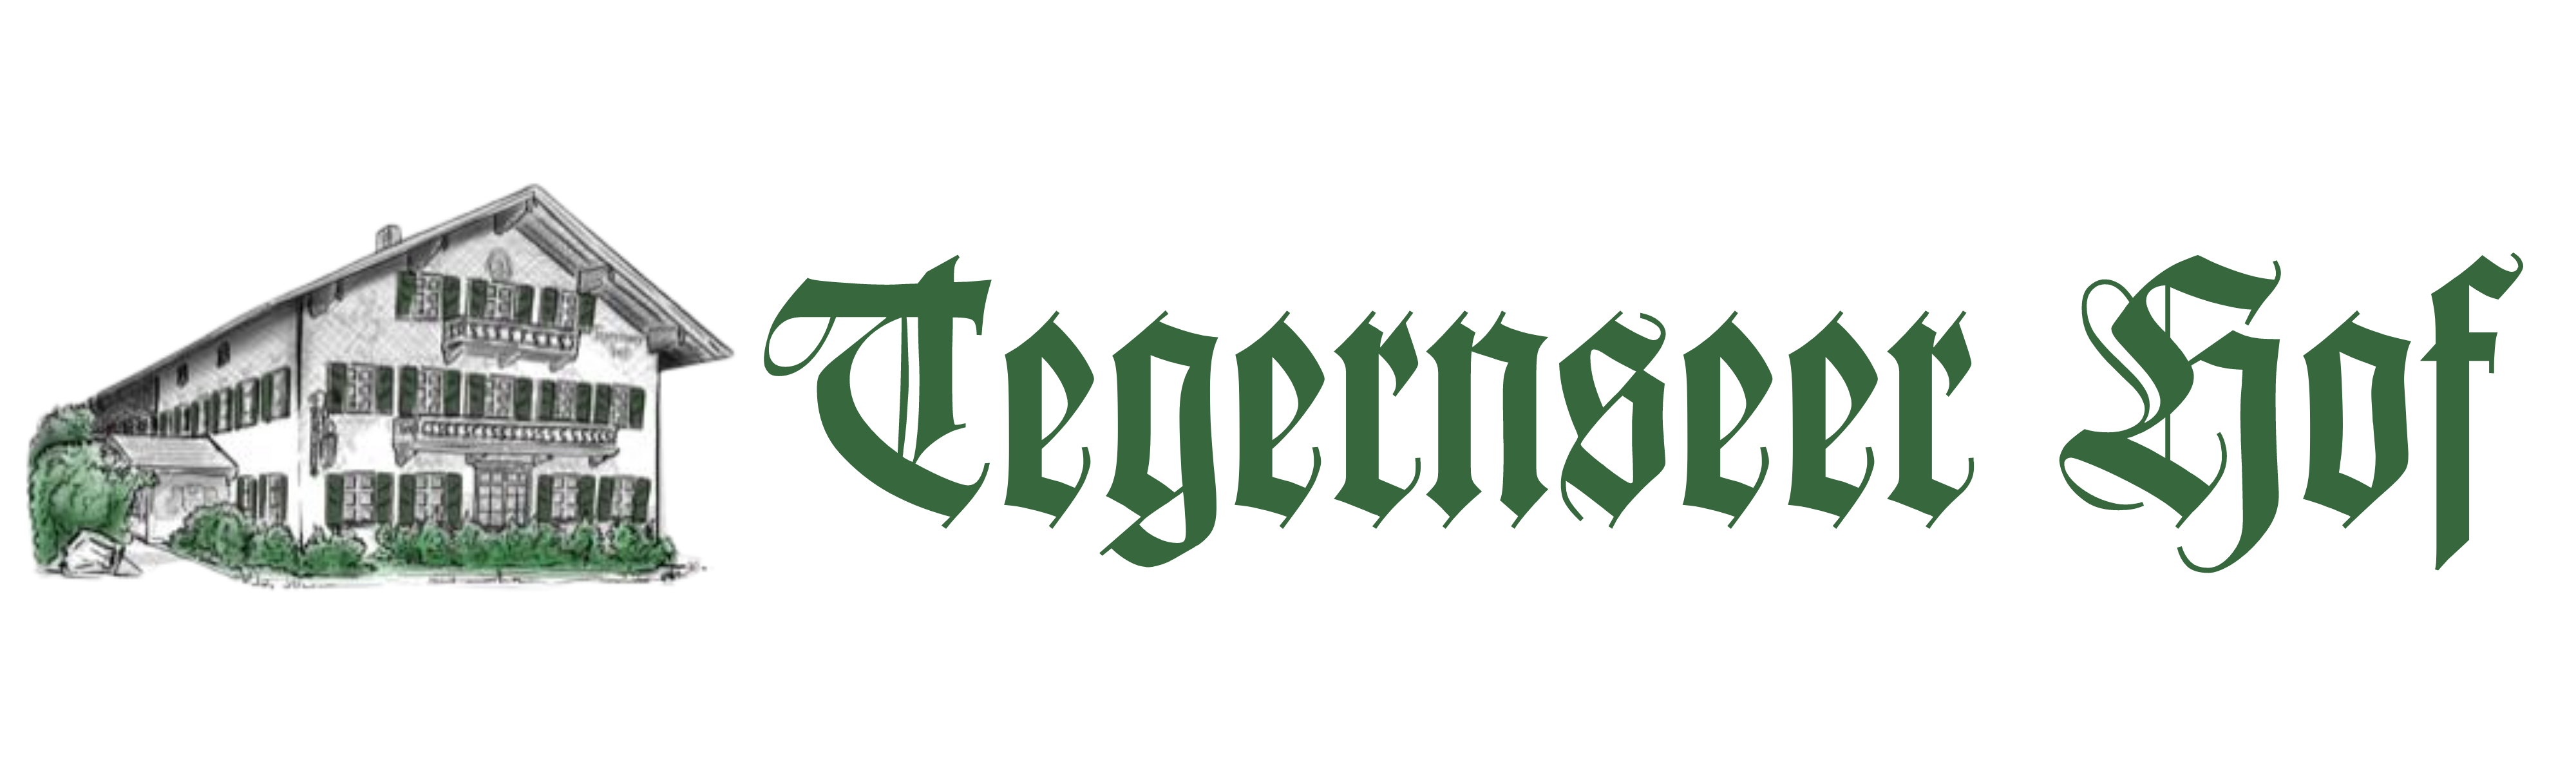 Tegernseer Hof Logo